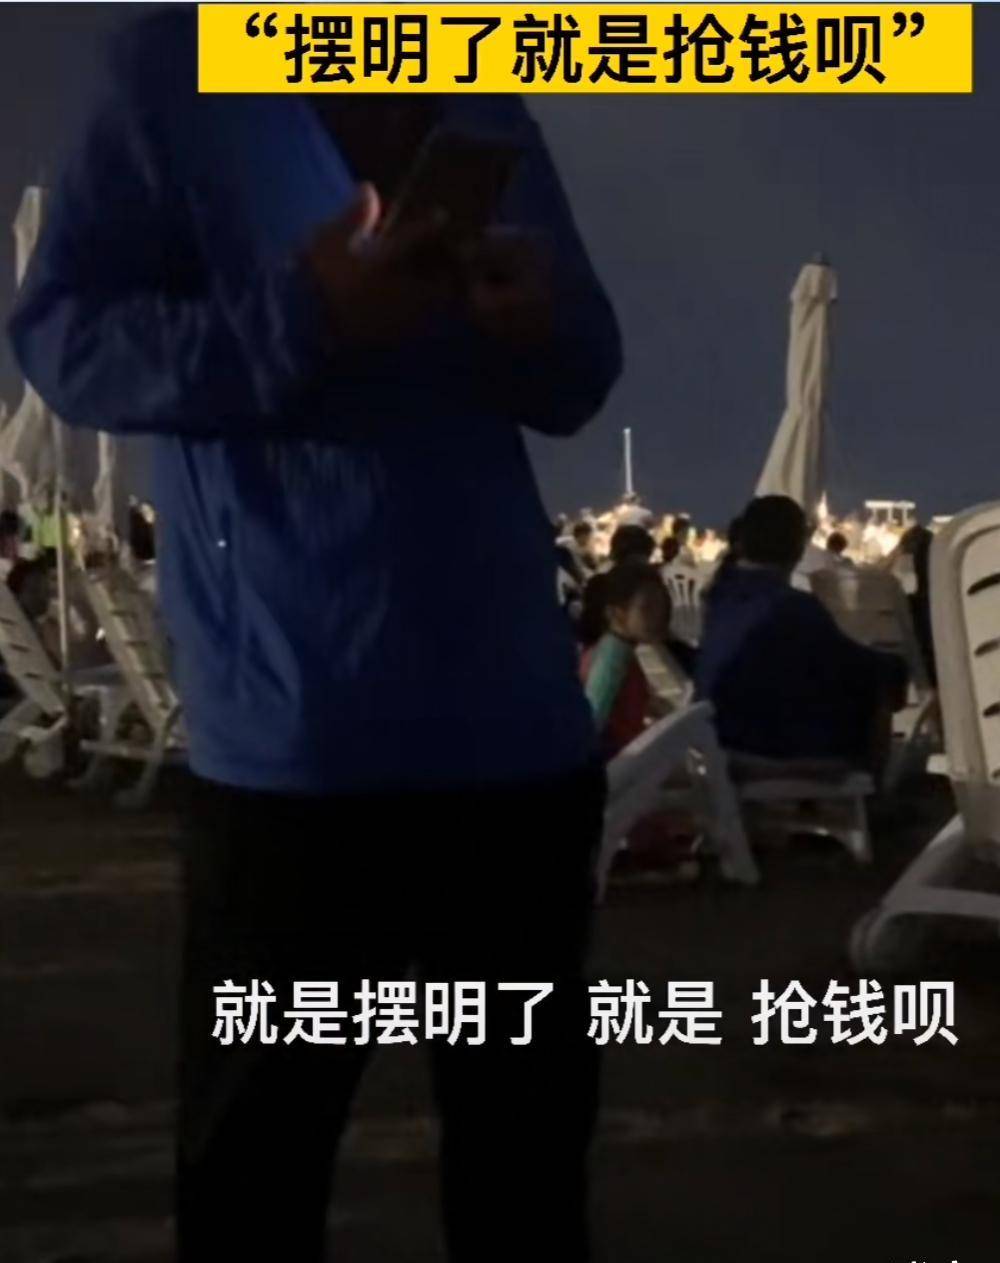 撑伞需加200元，上海景区天价撑伞费引热议！游客：摆明就是抢钱